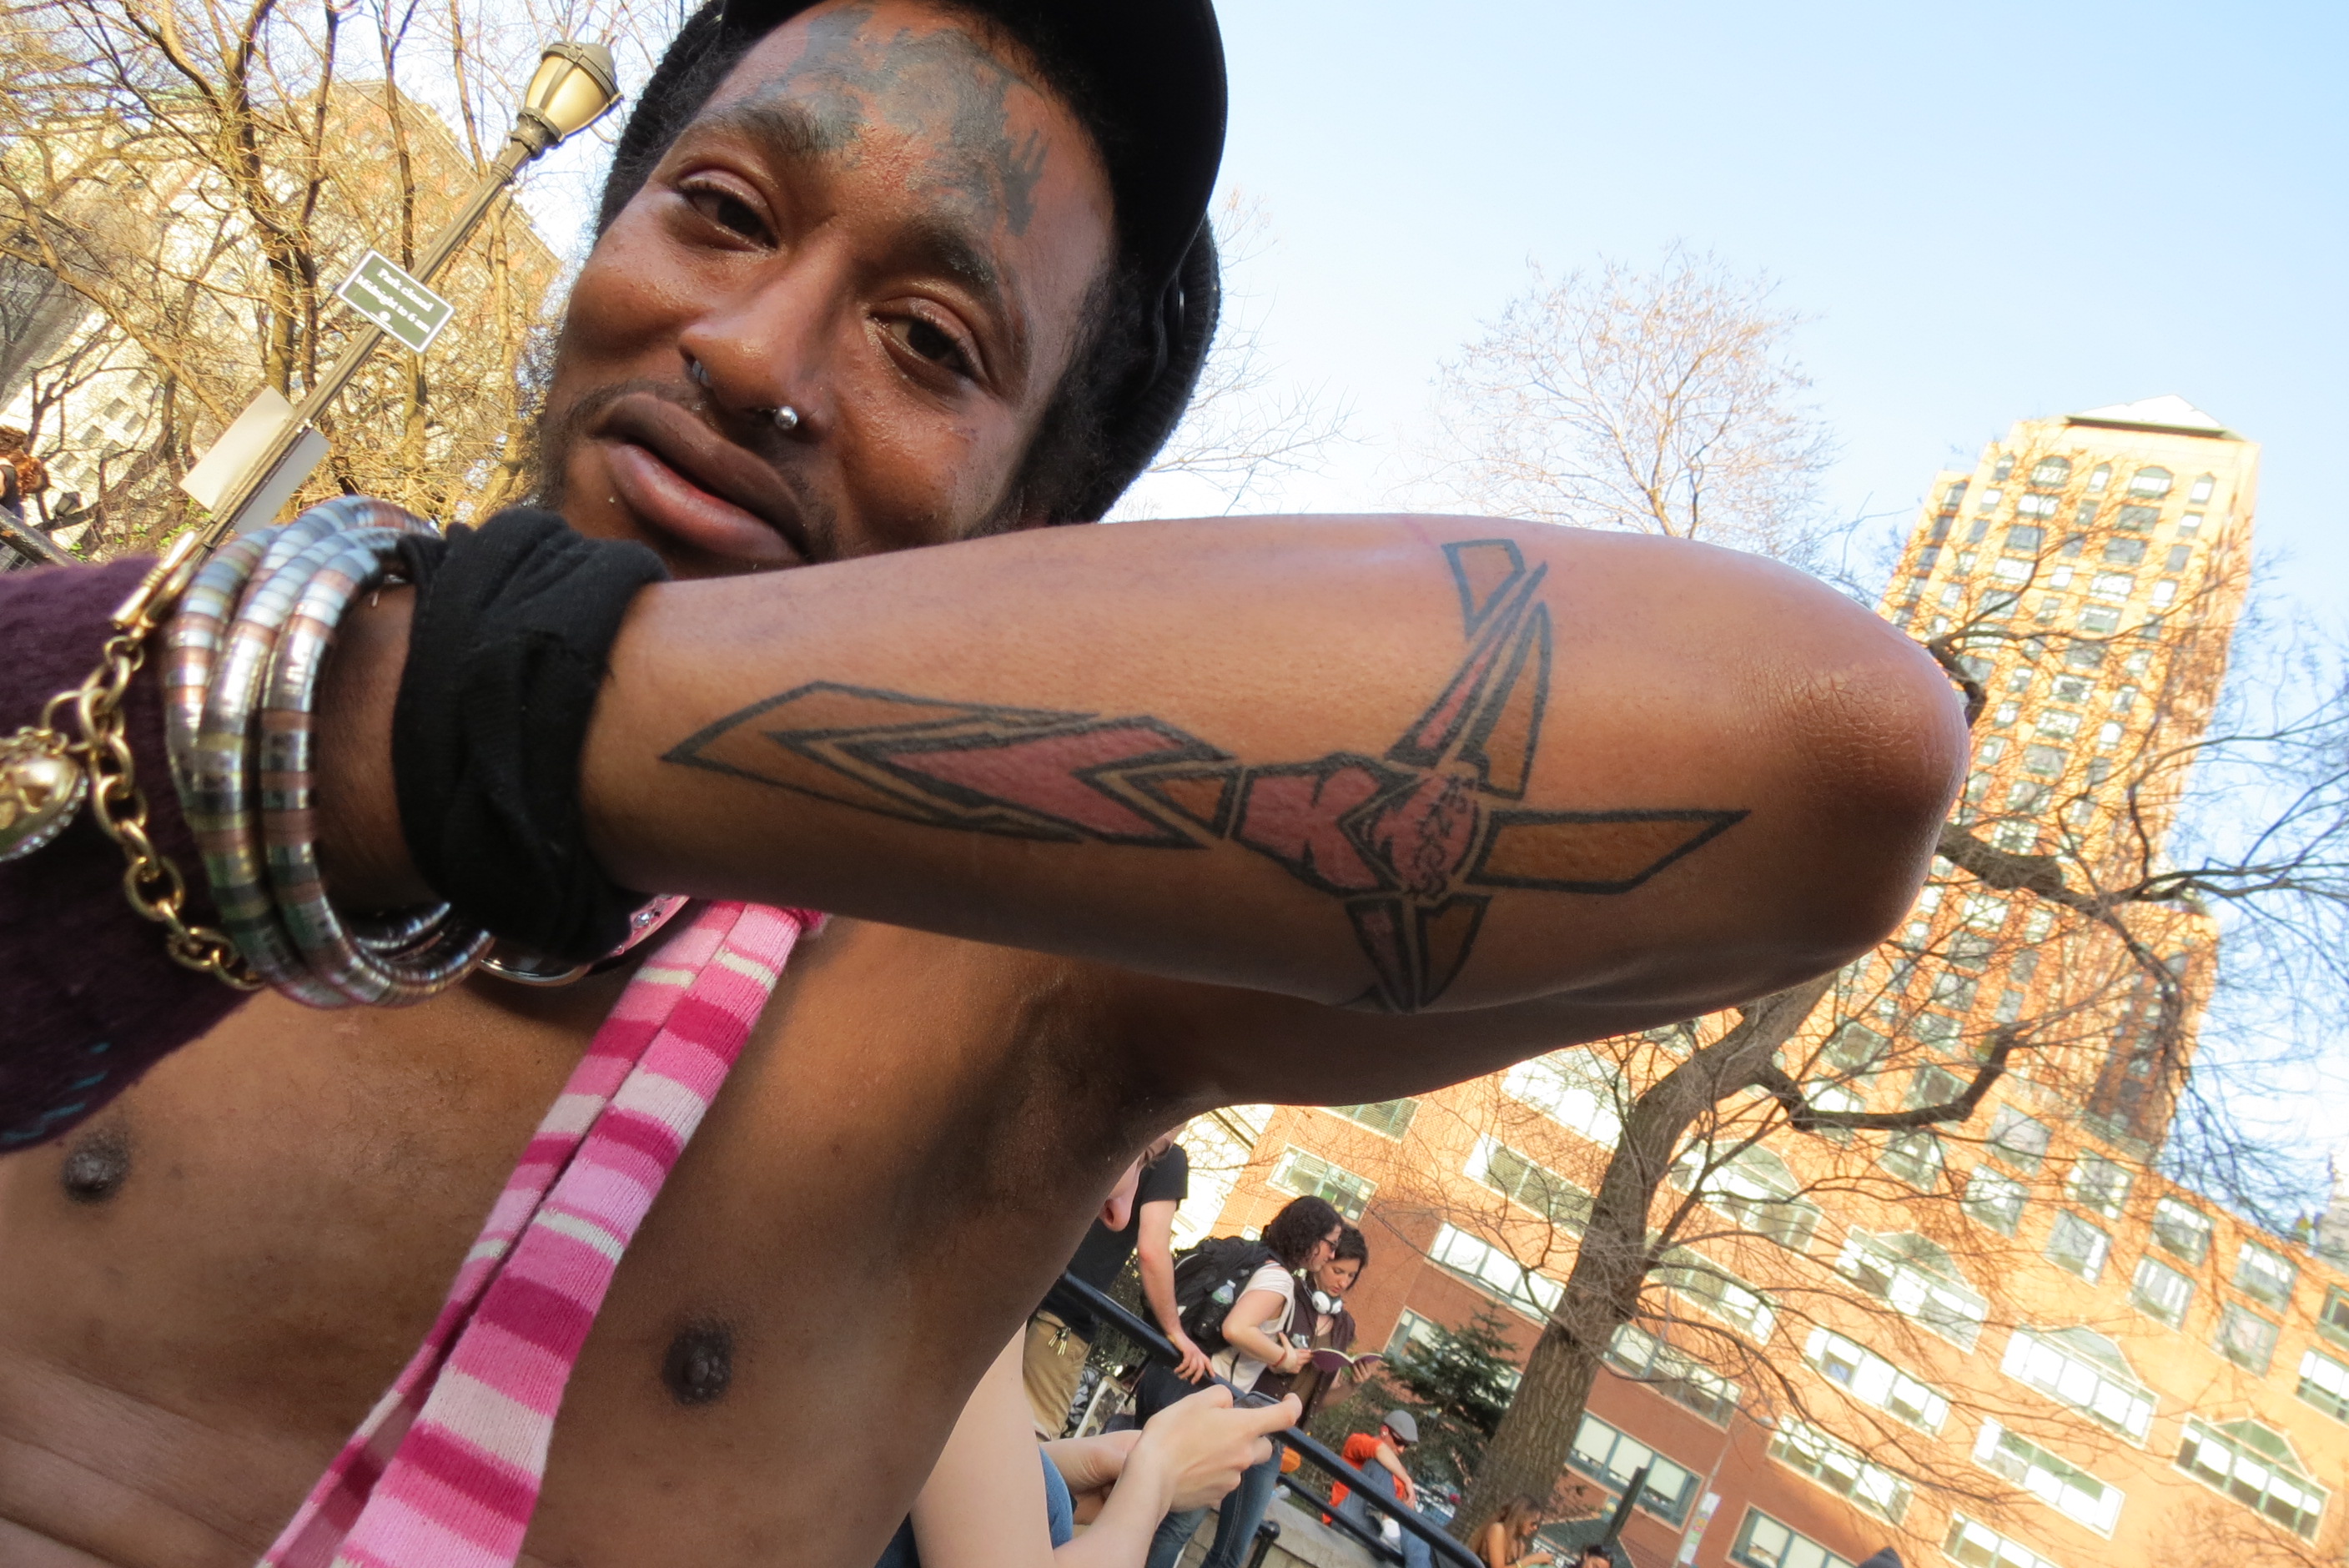 Black weird man with tattoos